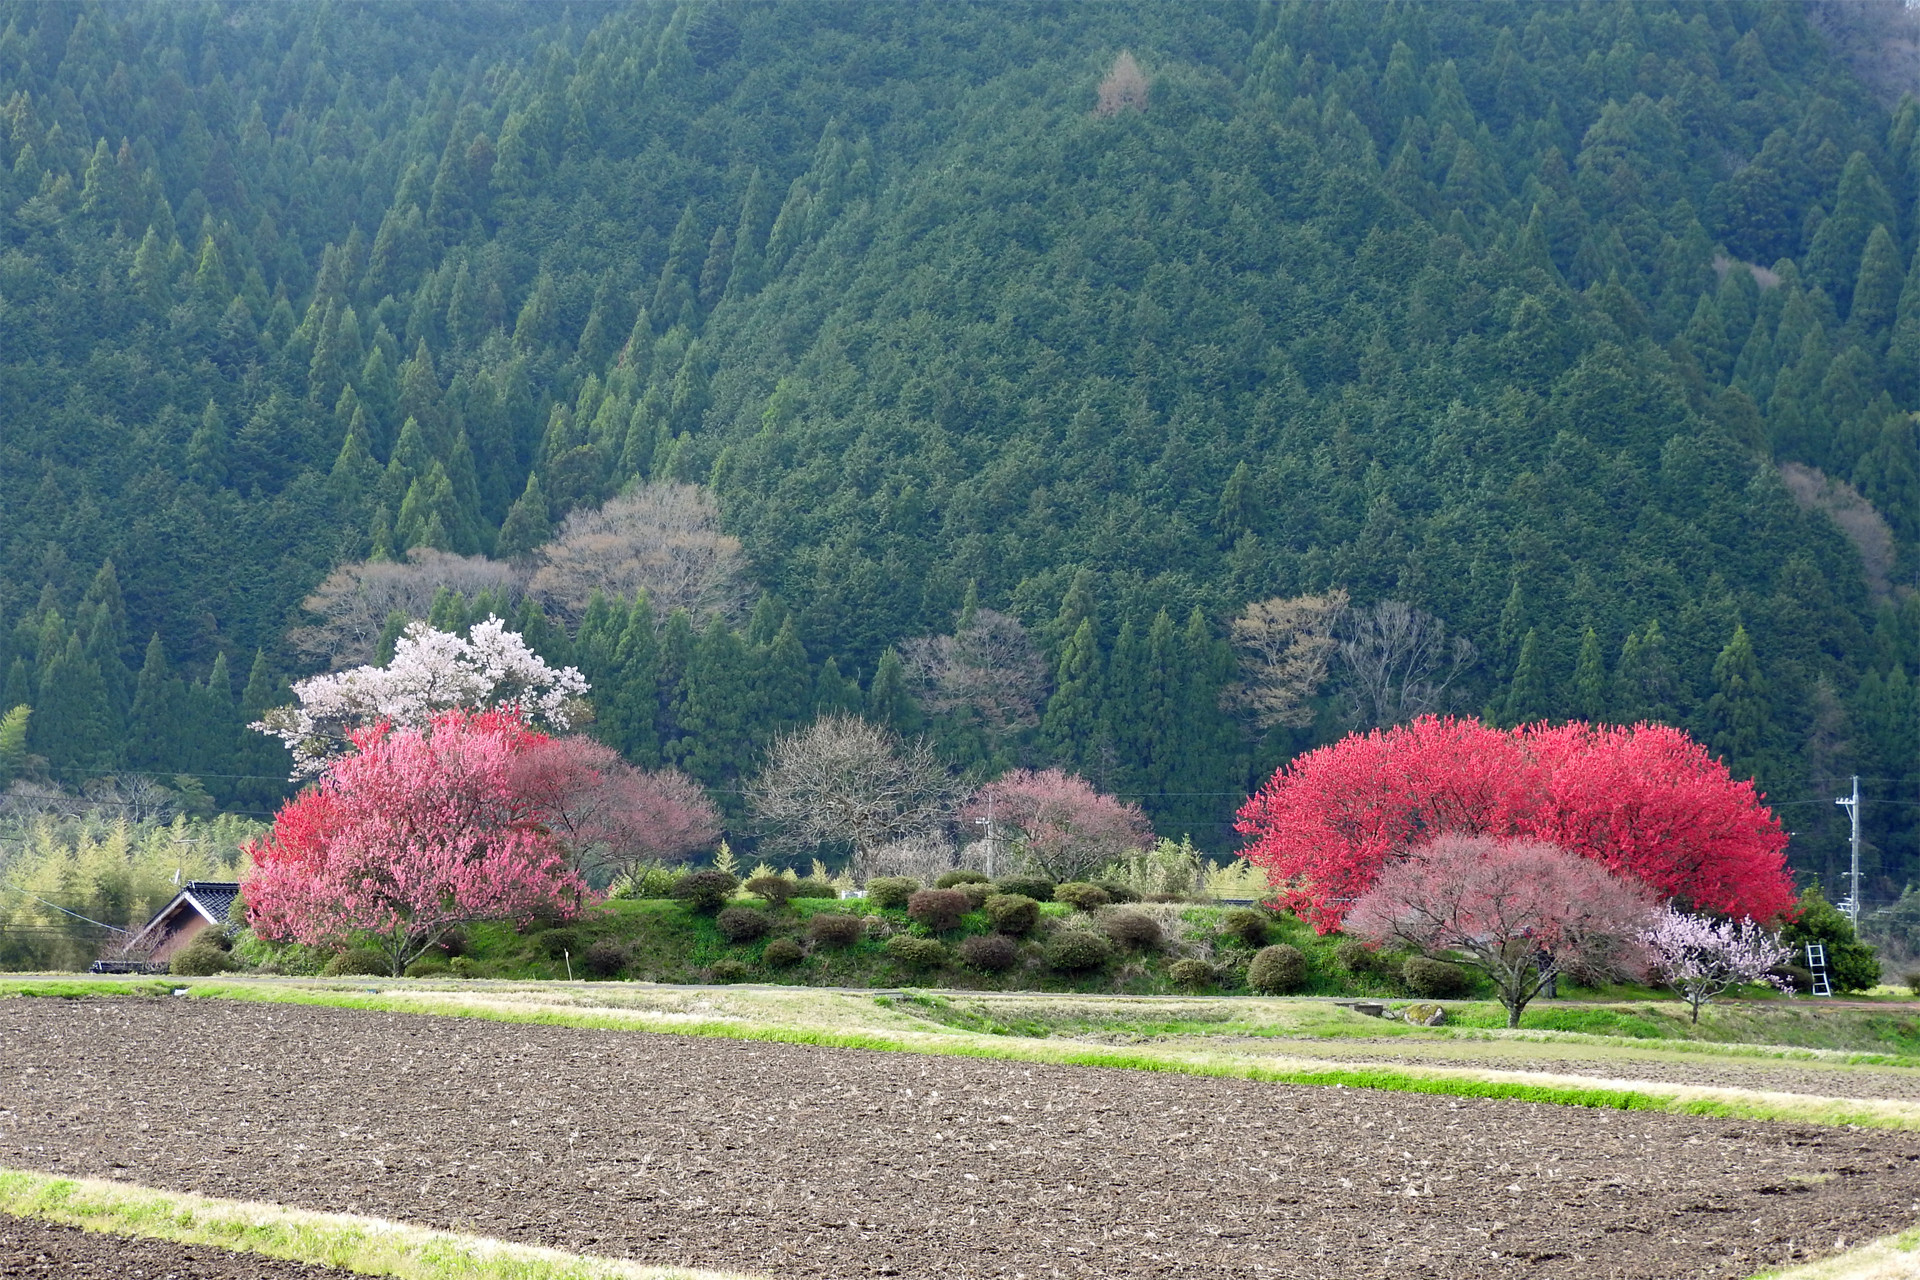 日本の風景 田舎道の桜と桃2 壁紙19x1280 壁紙館